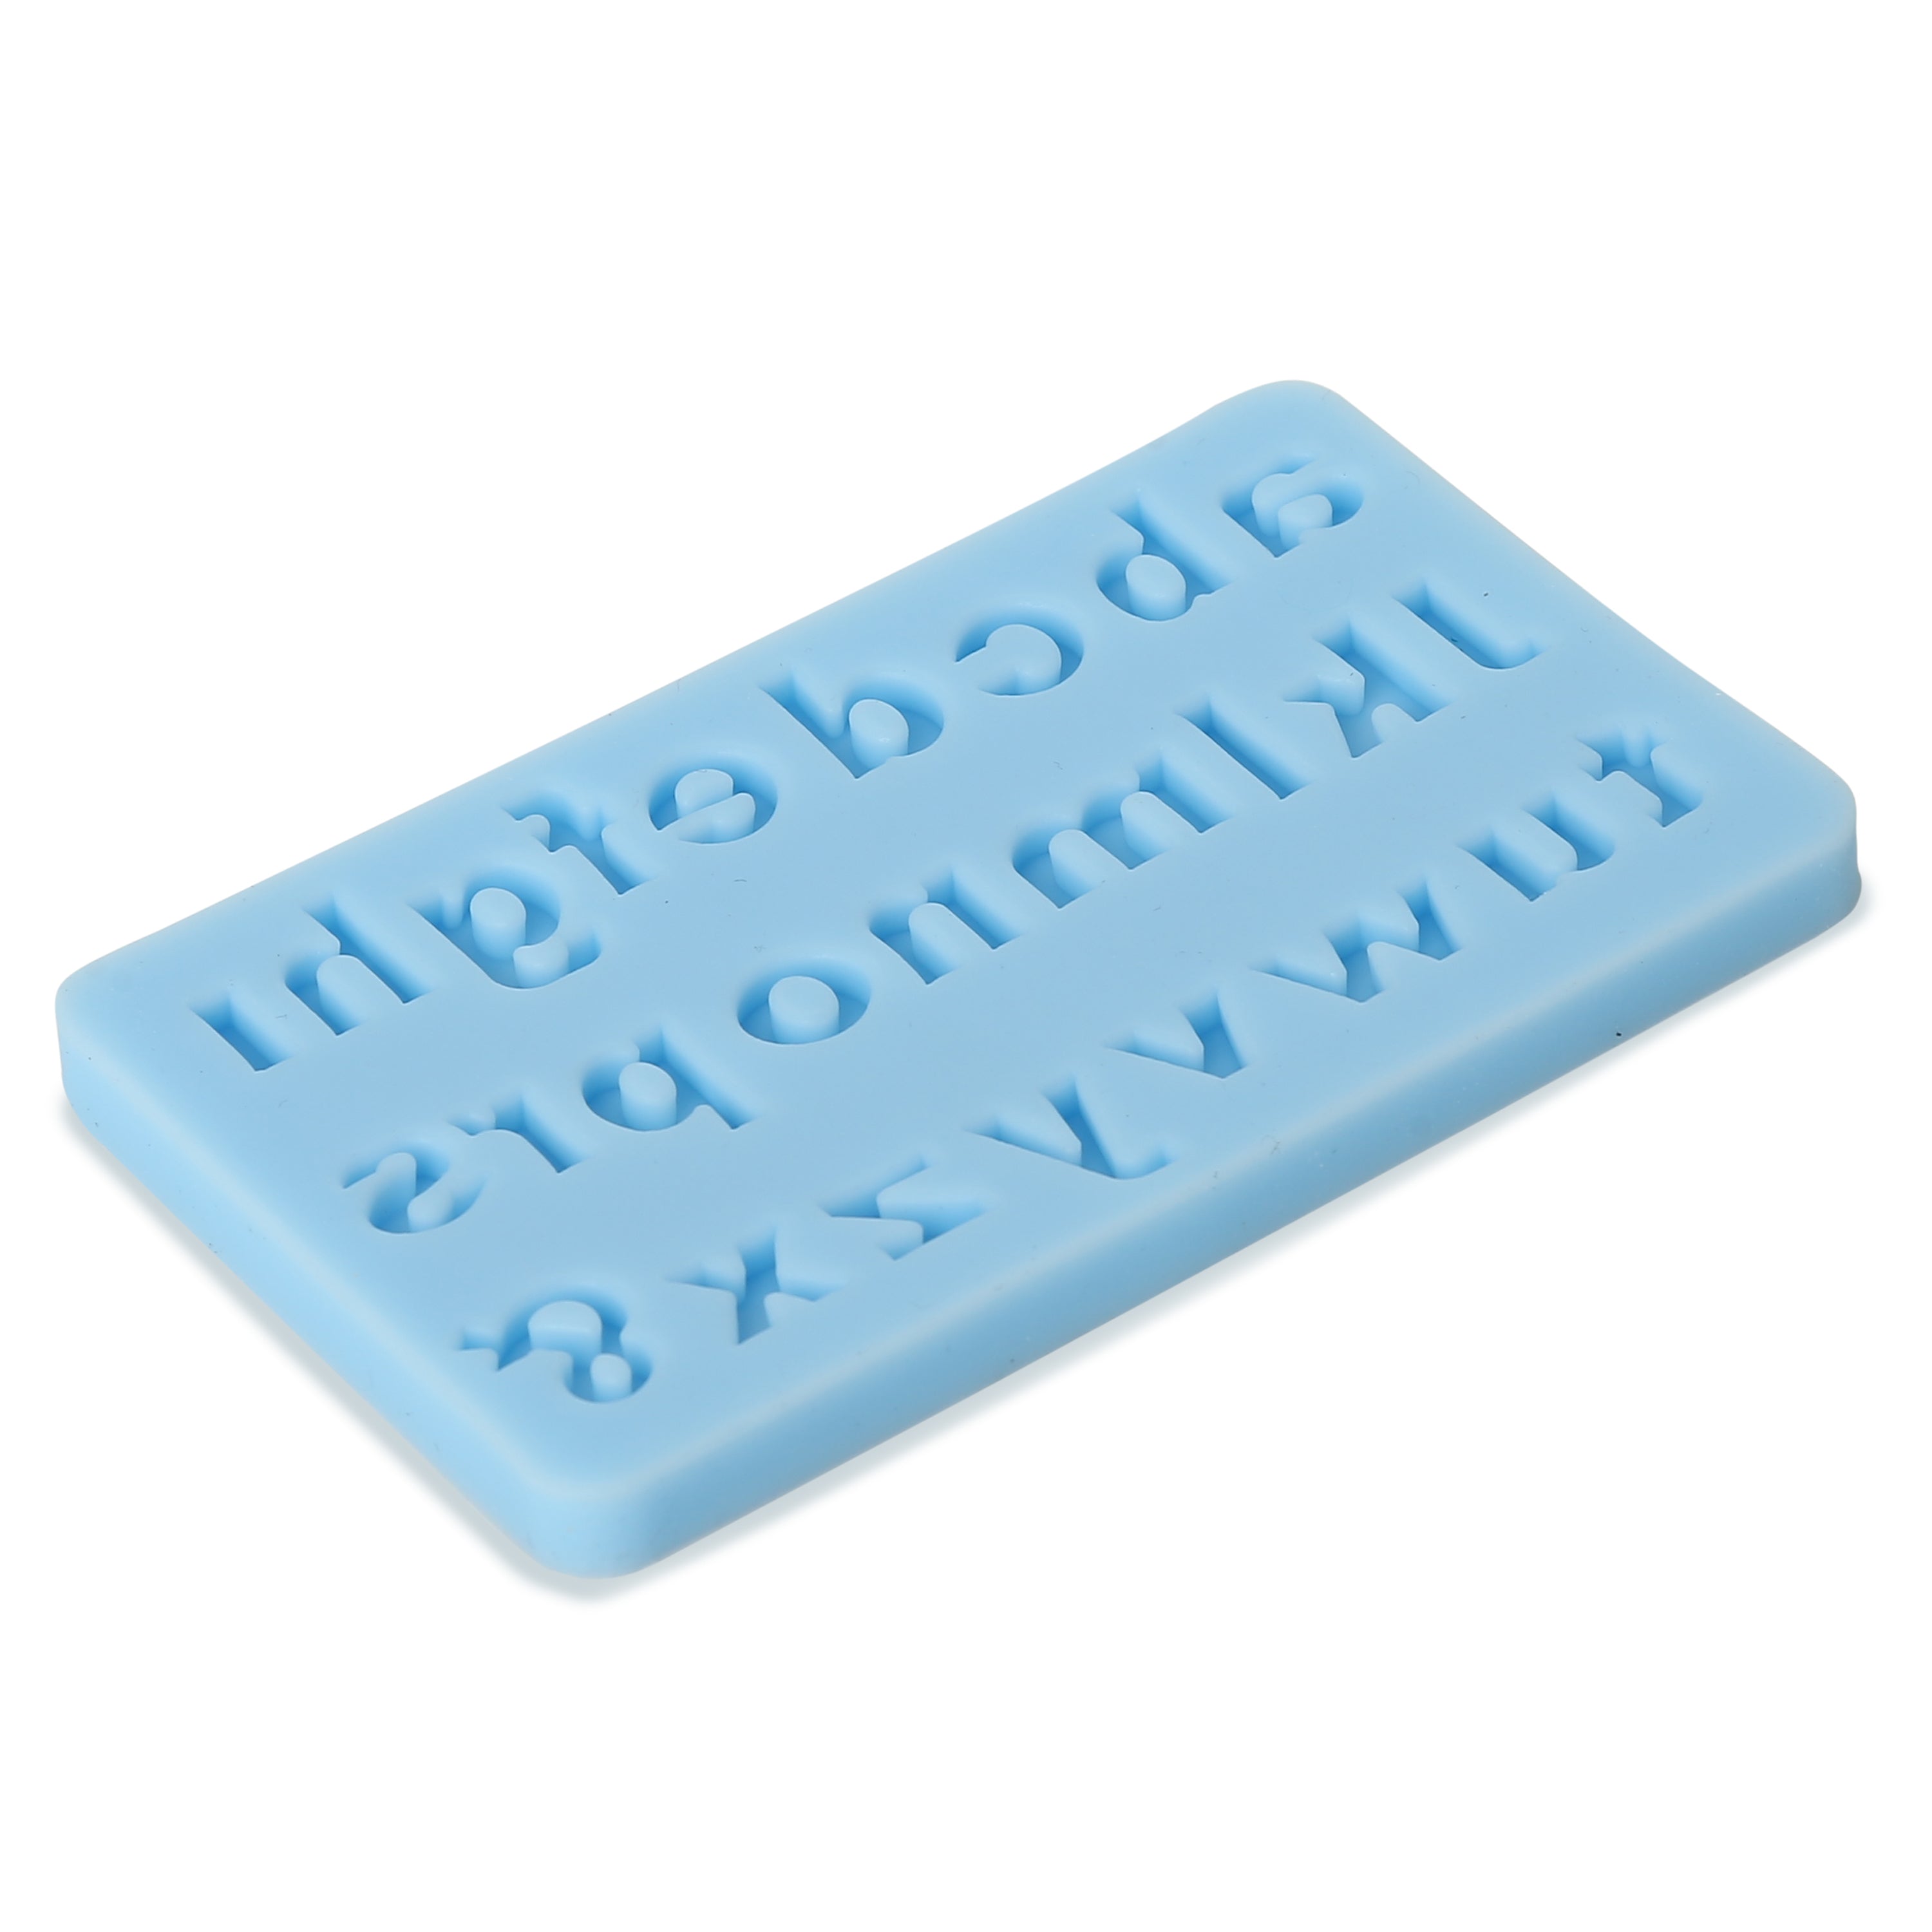 Silicon Mould Lowercase Alphabets 10.3cm X 6.3cm 7mm 1pc